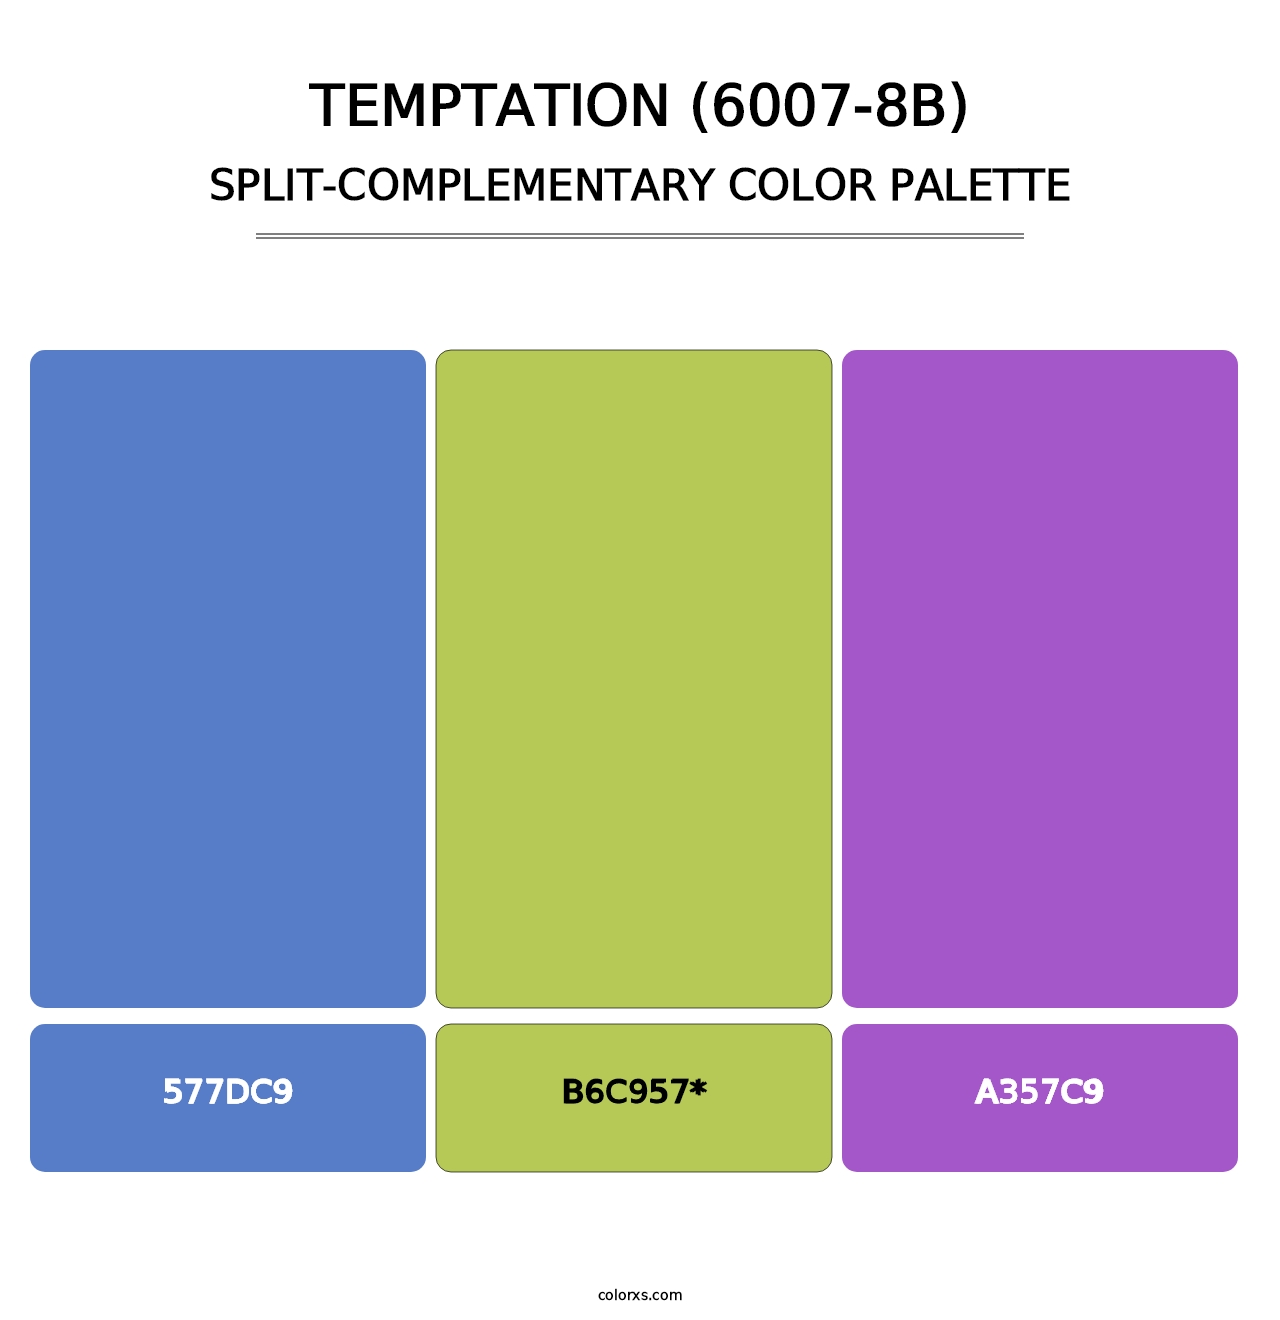 Temptation (6007-8B) - Split-Complementary Color Palette